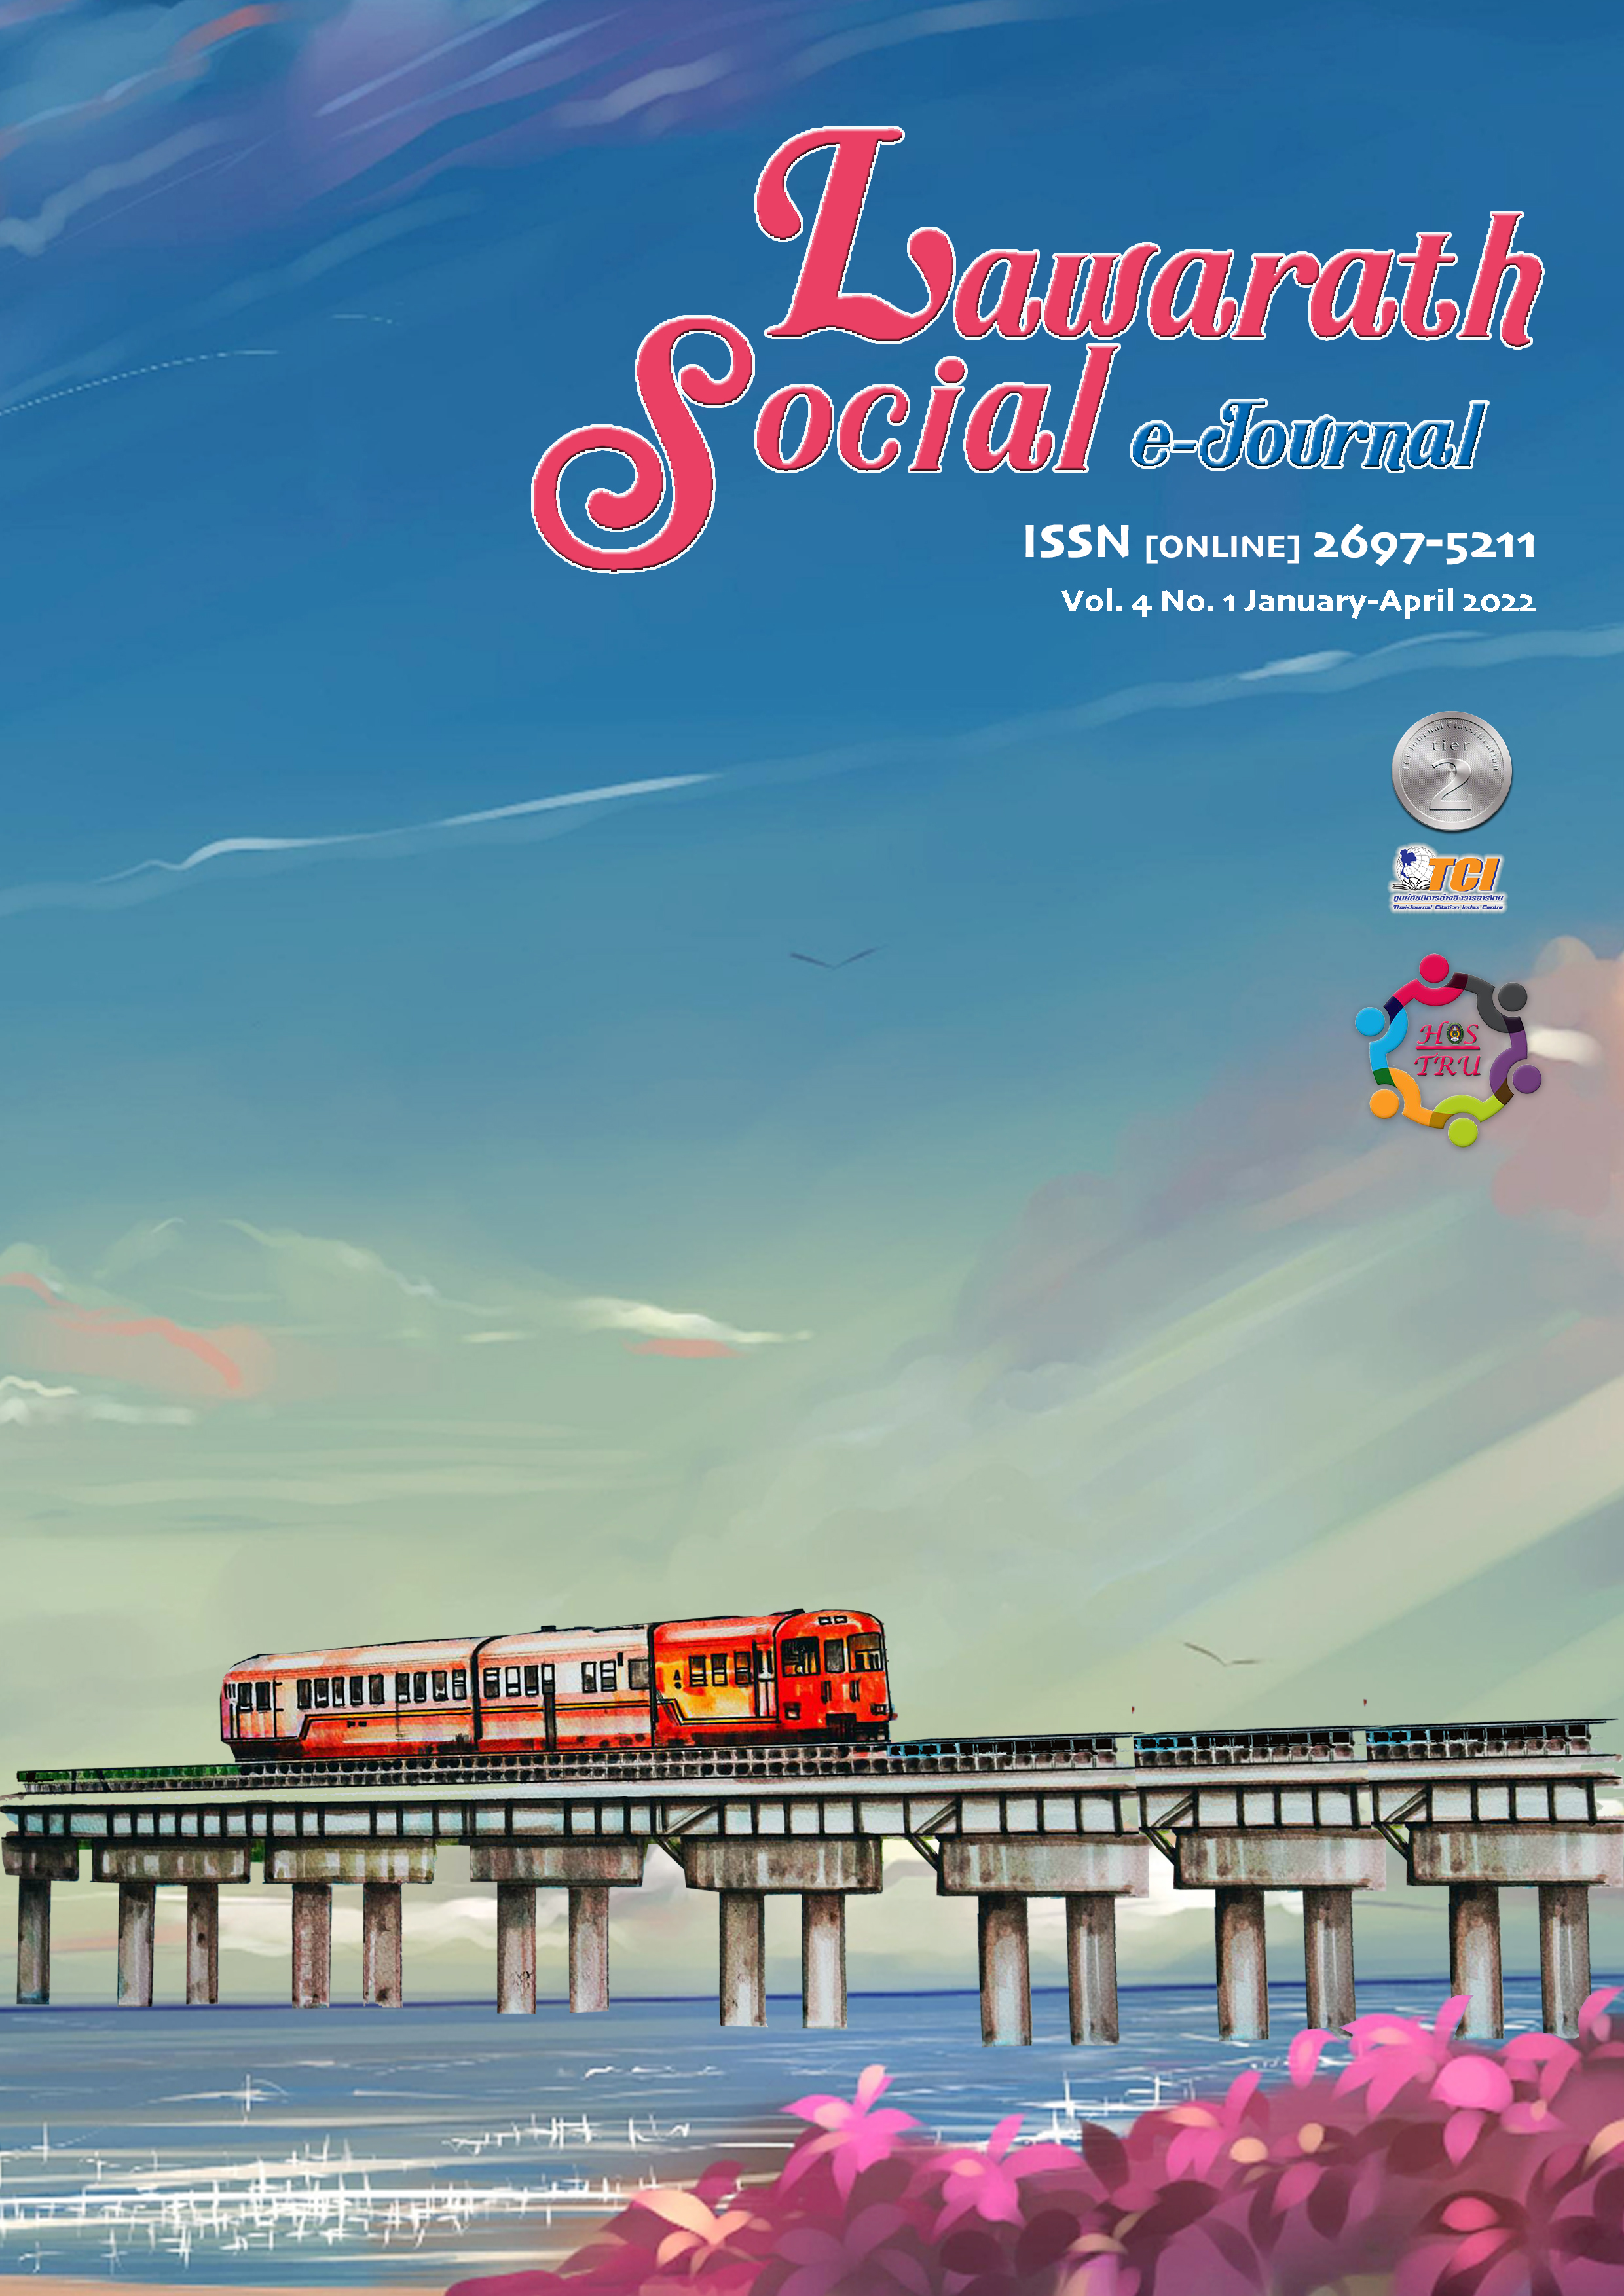 					View Vol. 4 No. 1 (2022): Lawarath Social E-Journal Vol. 4 No. 1 (January - April 2022)
				